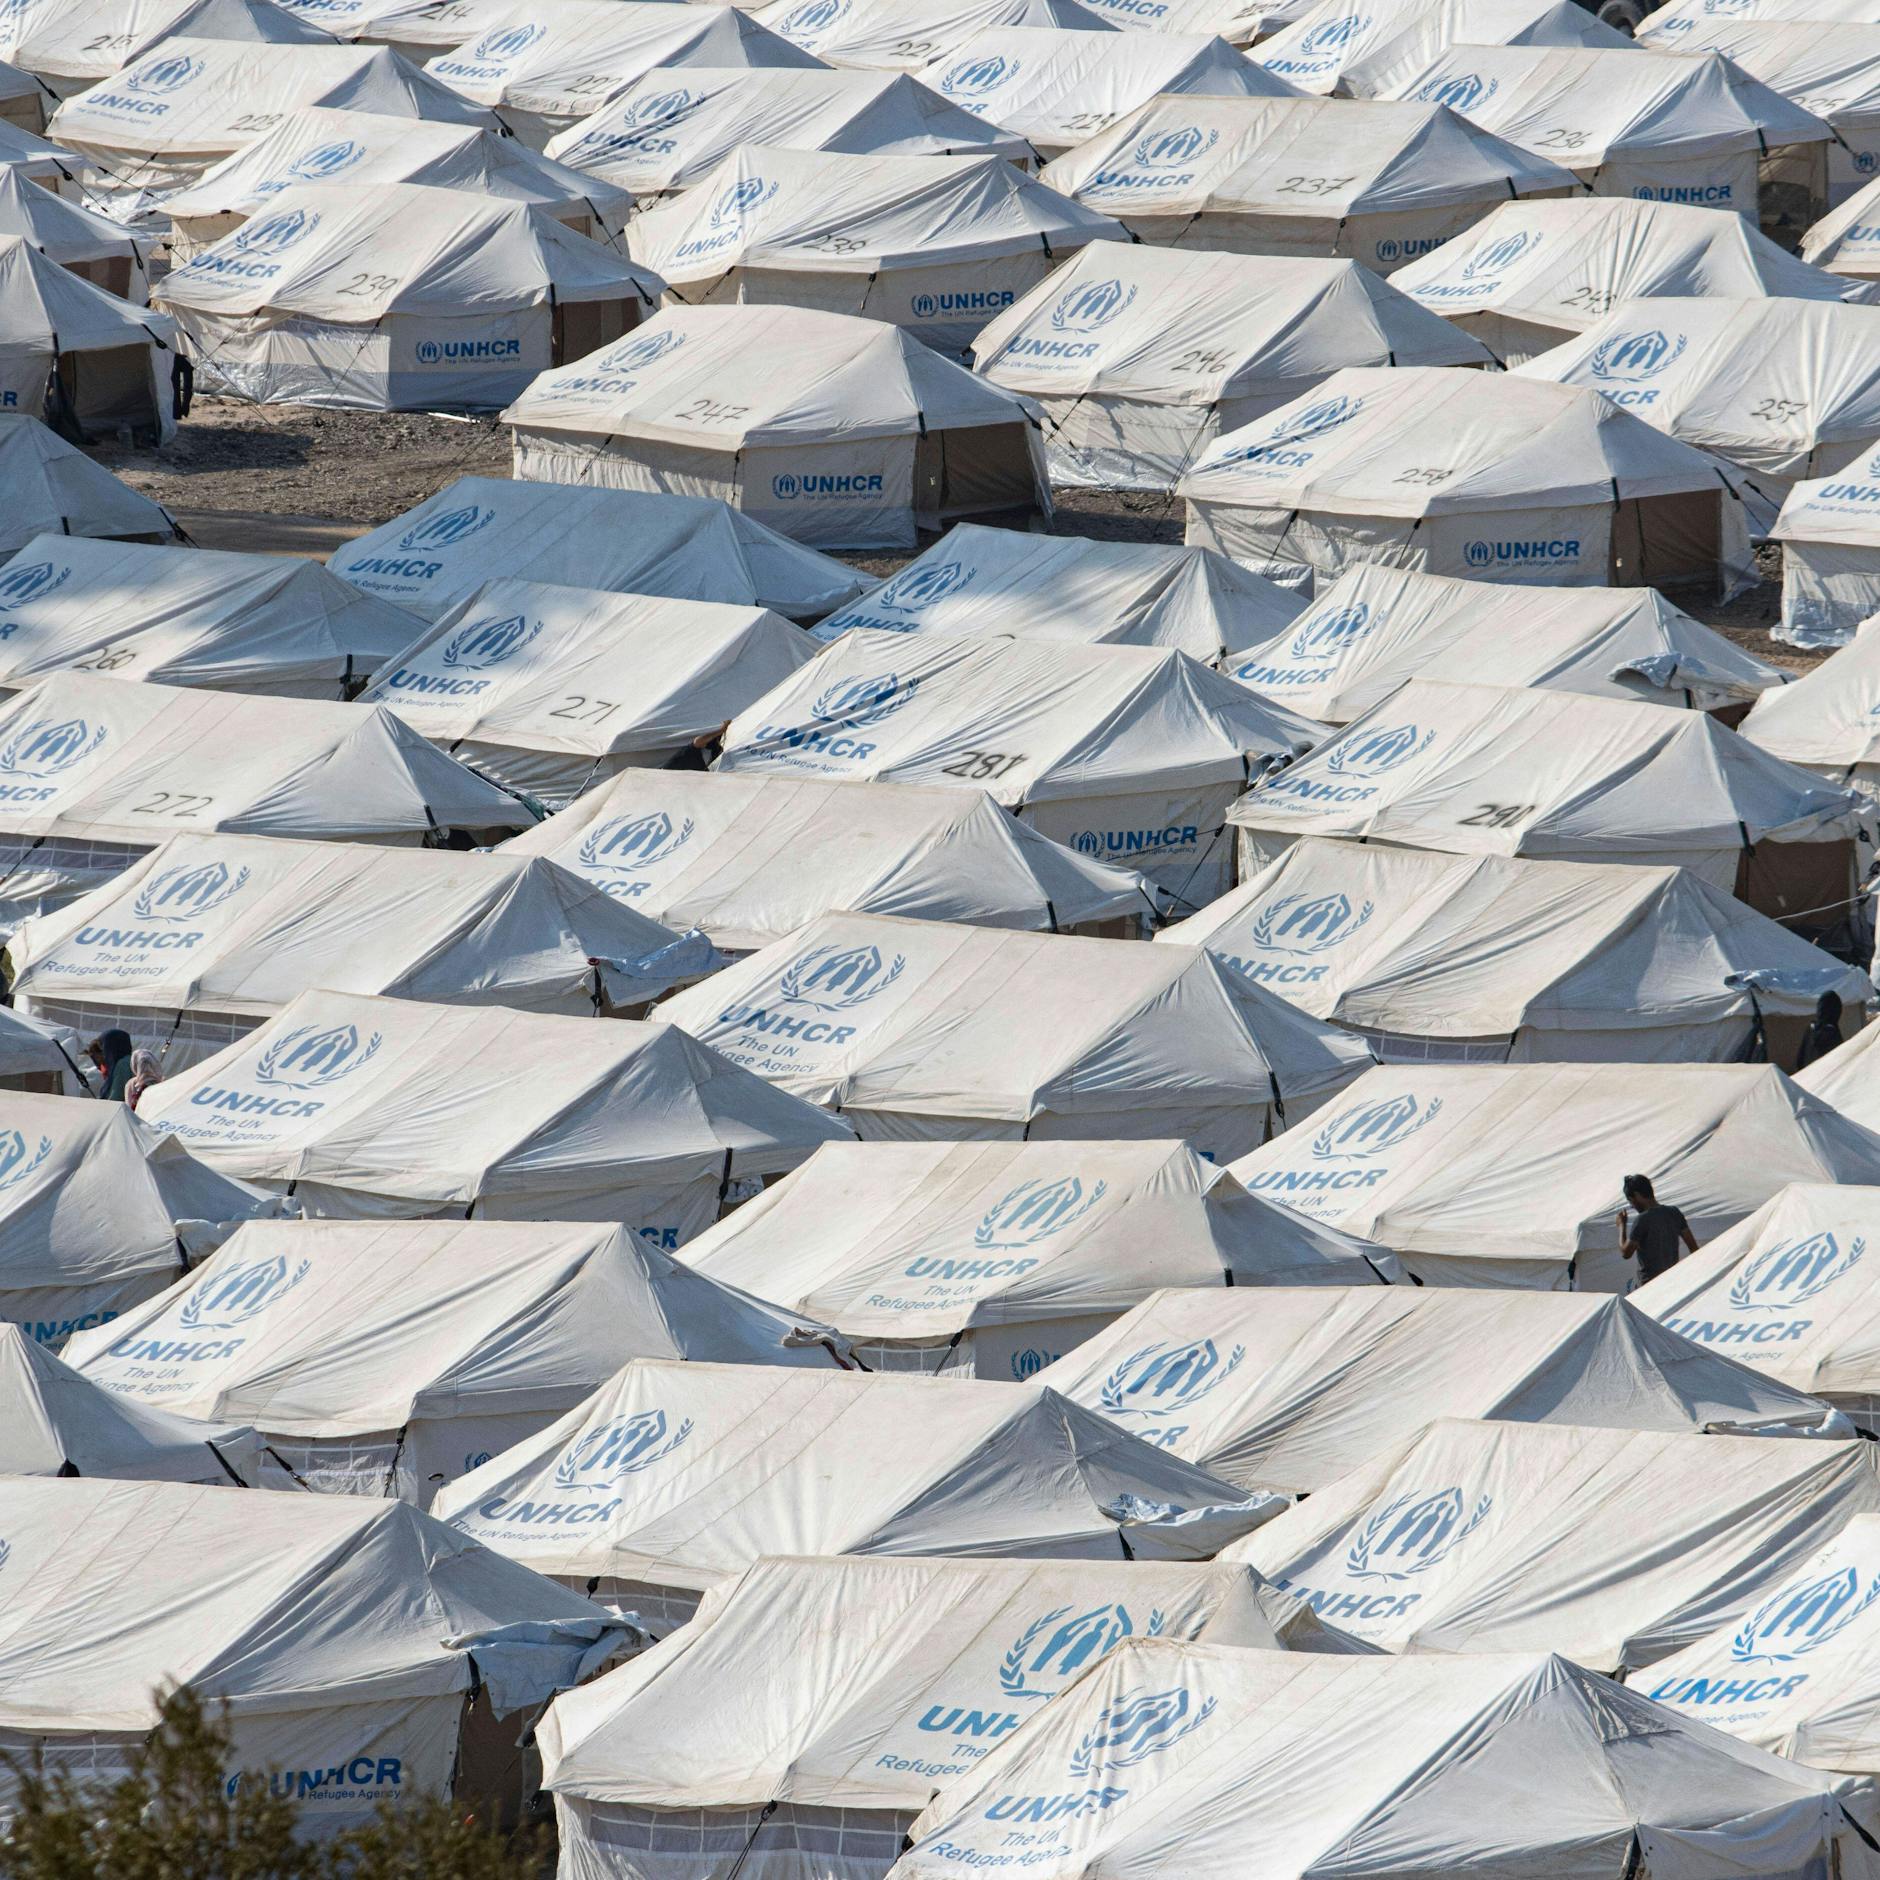 Image - Griechenland bringt fast 1000 Migranten zum Festland - Inselcamps überfüllt